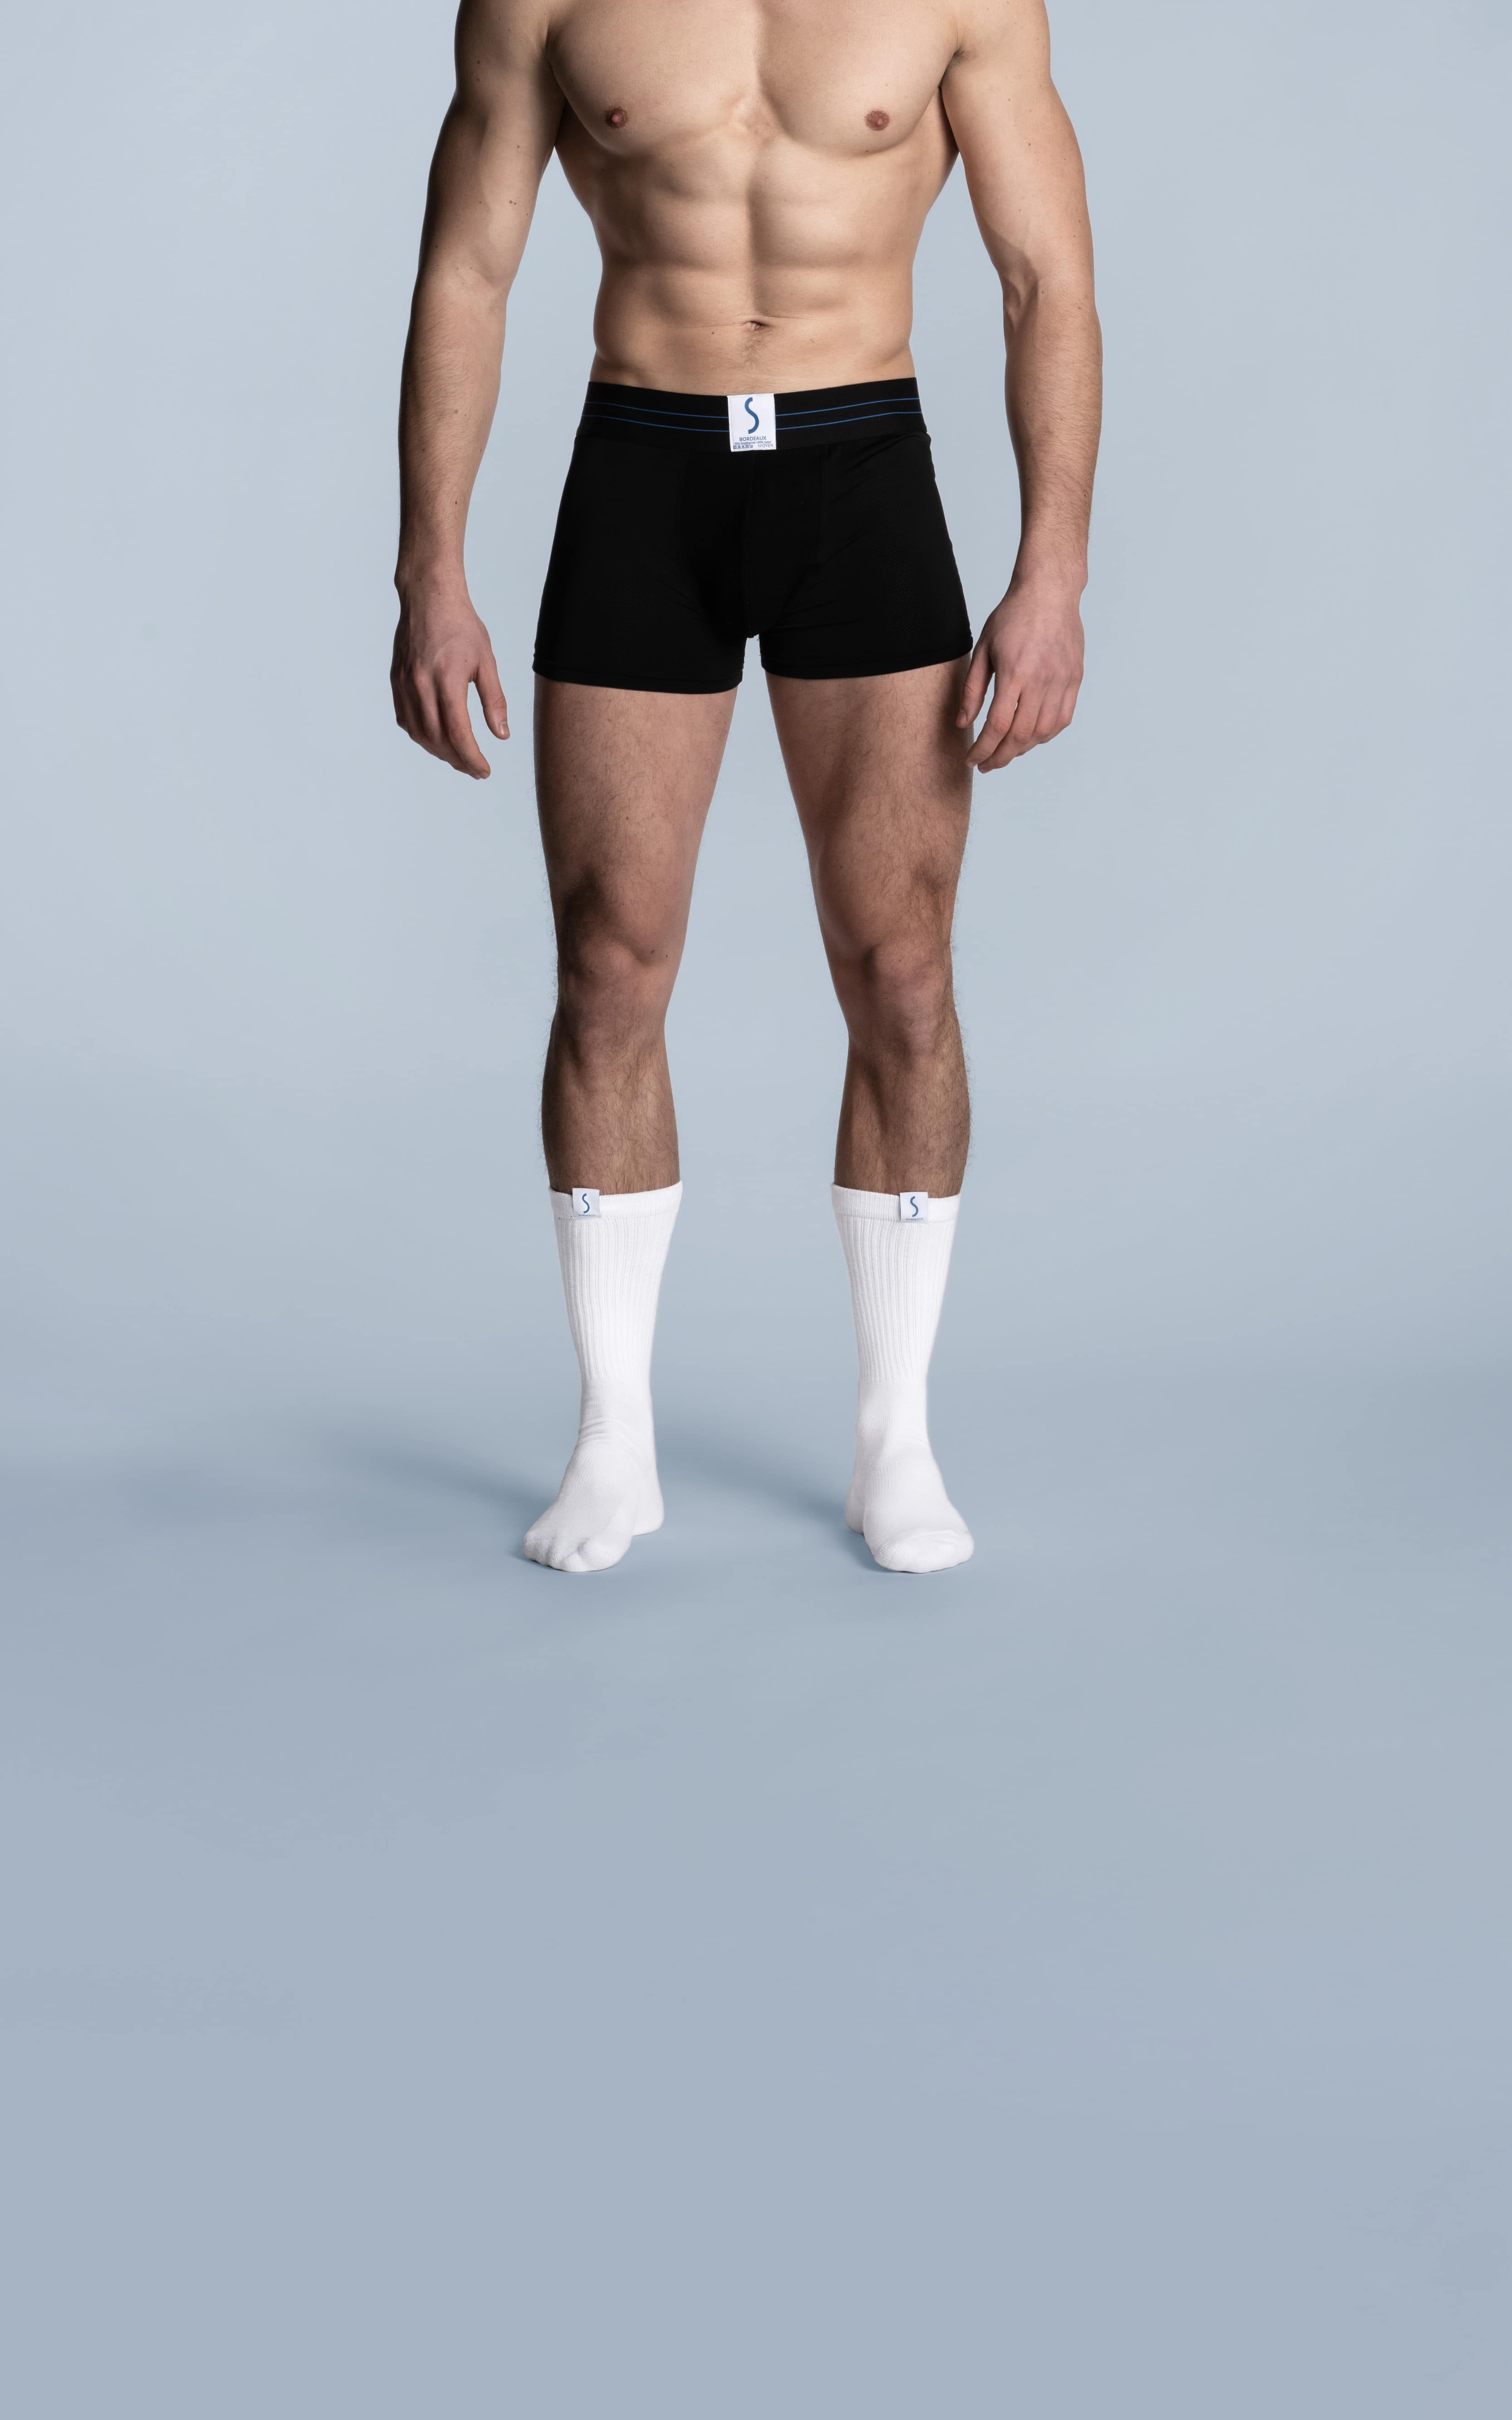 Homme portant un boxer calecon sportif noir et des chaussettes mi-mollet blanches de la marque S BORDEAUX